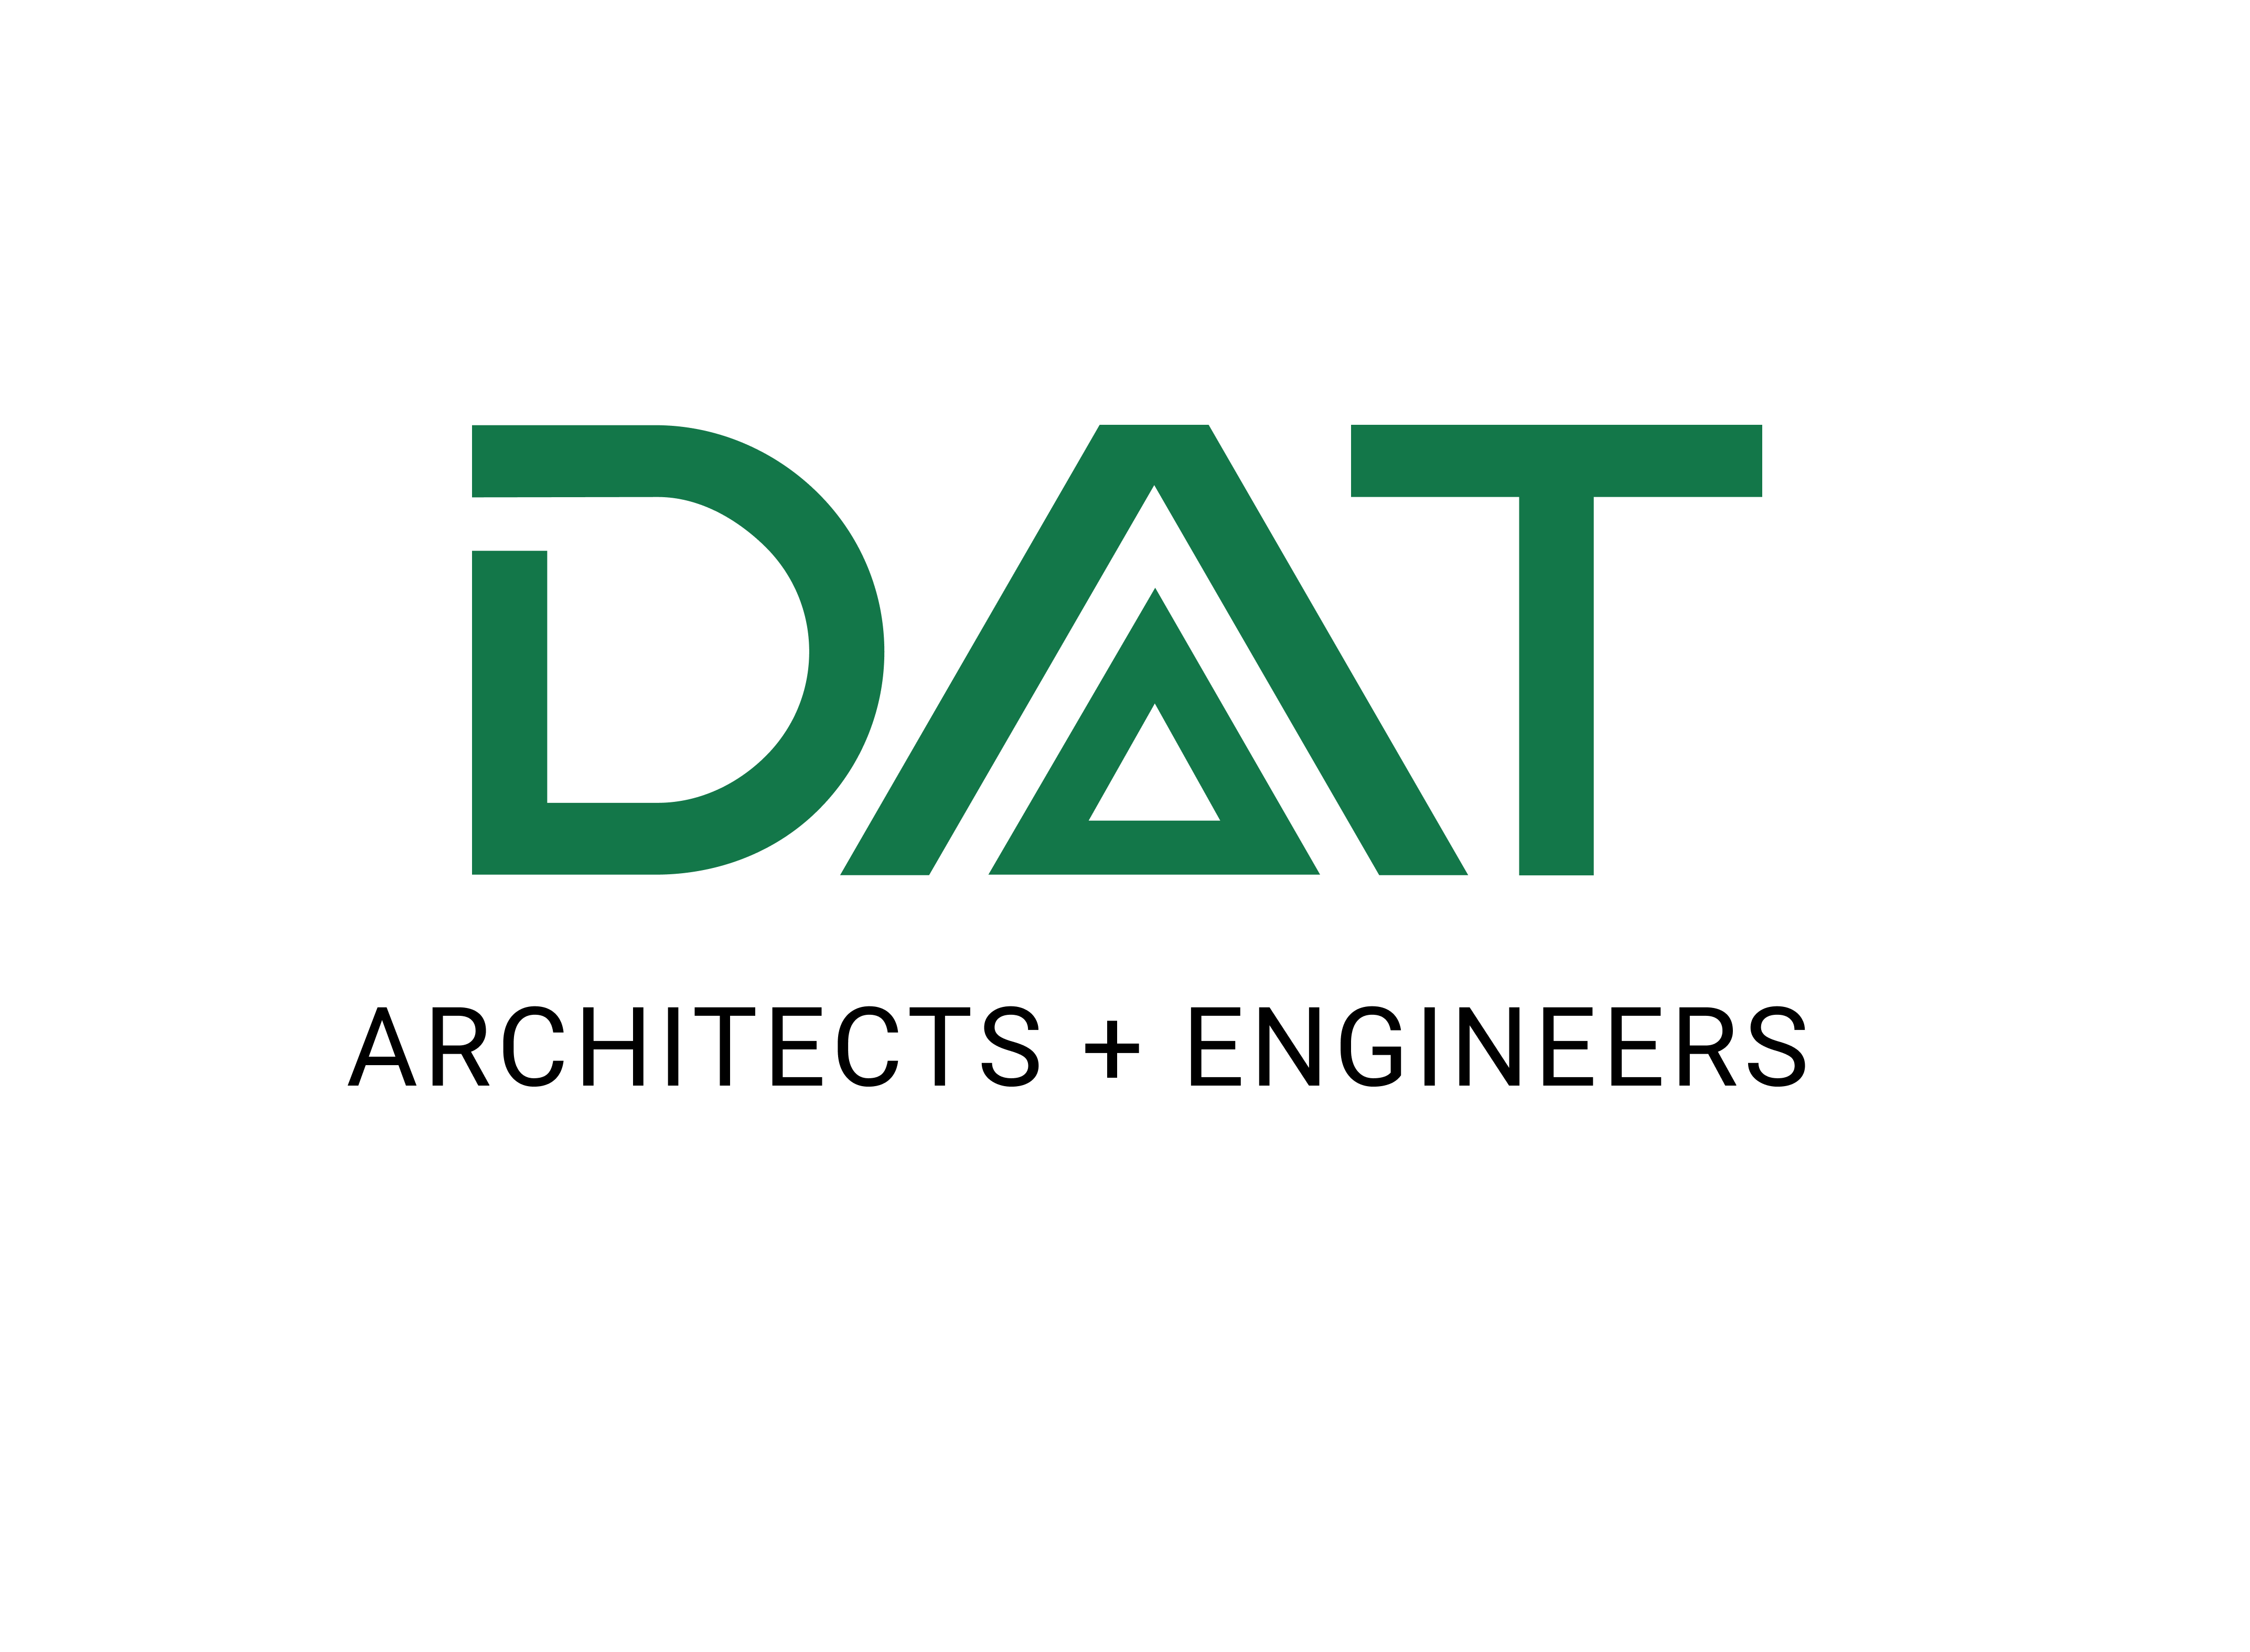 DAT Engineering Consultancy